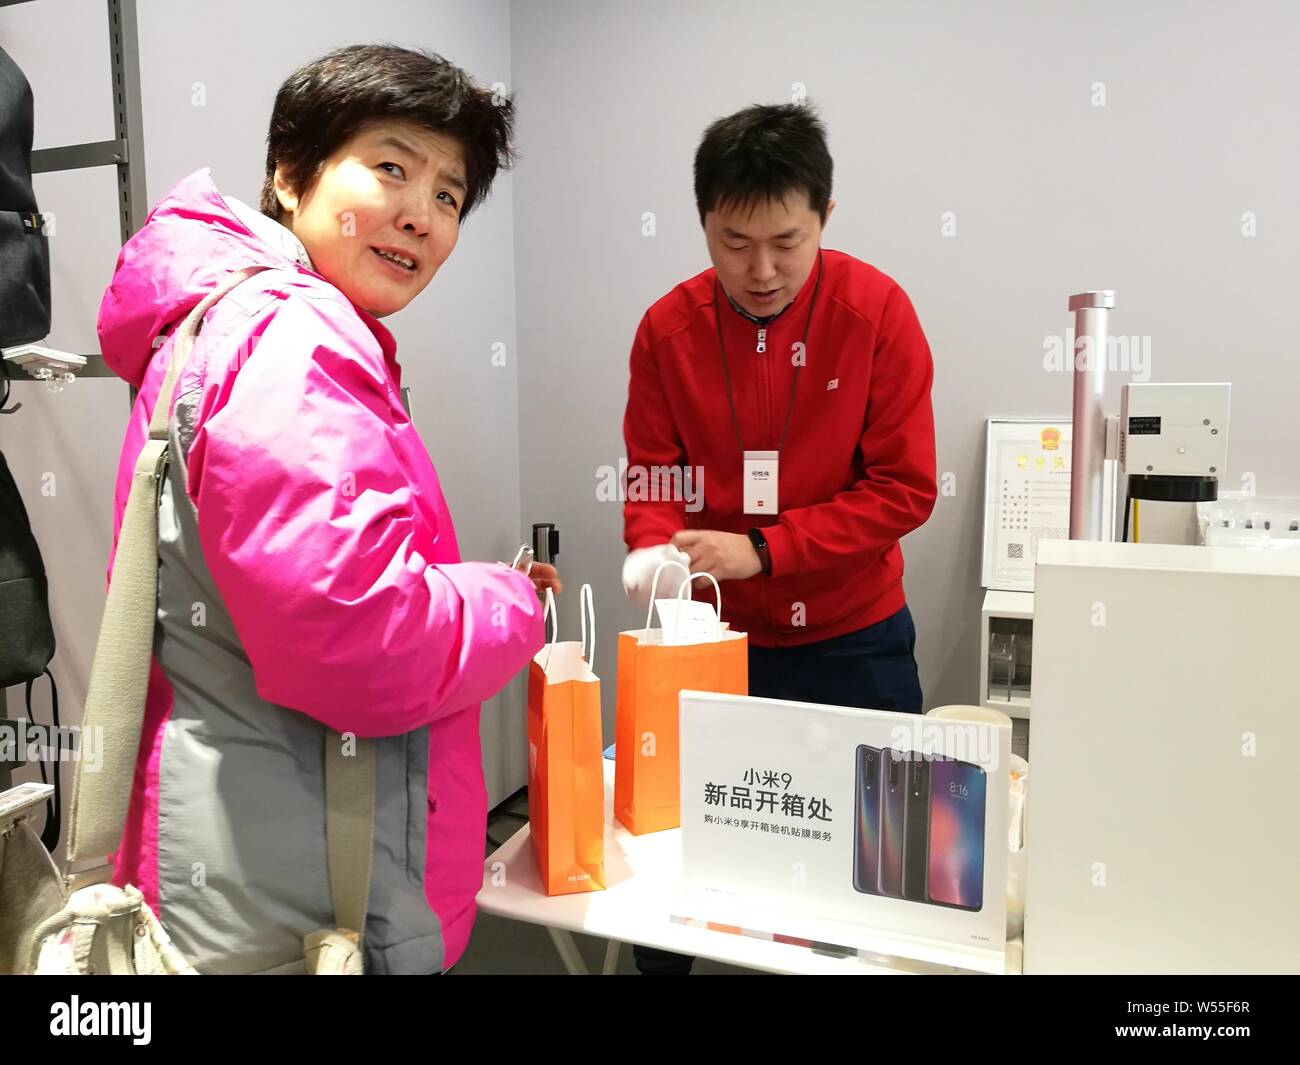 Un client montre son smartphone Xiaomi Mi 9 dans un magasin de Xiaomi à Beijing, Chine, 26 février 2019. Banque D'Images